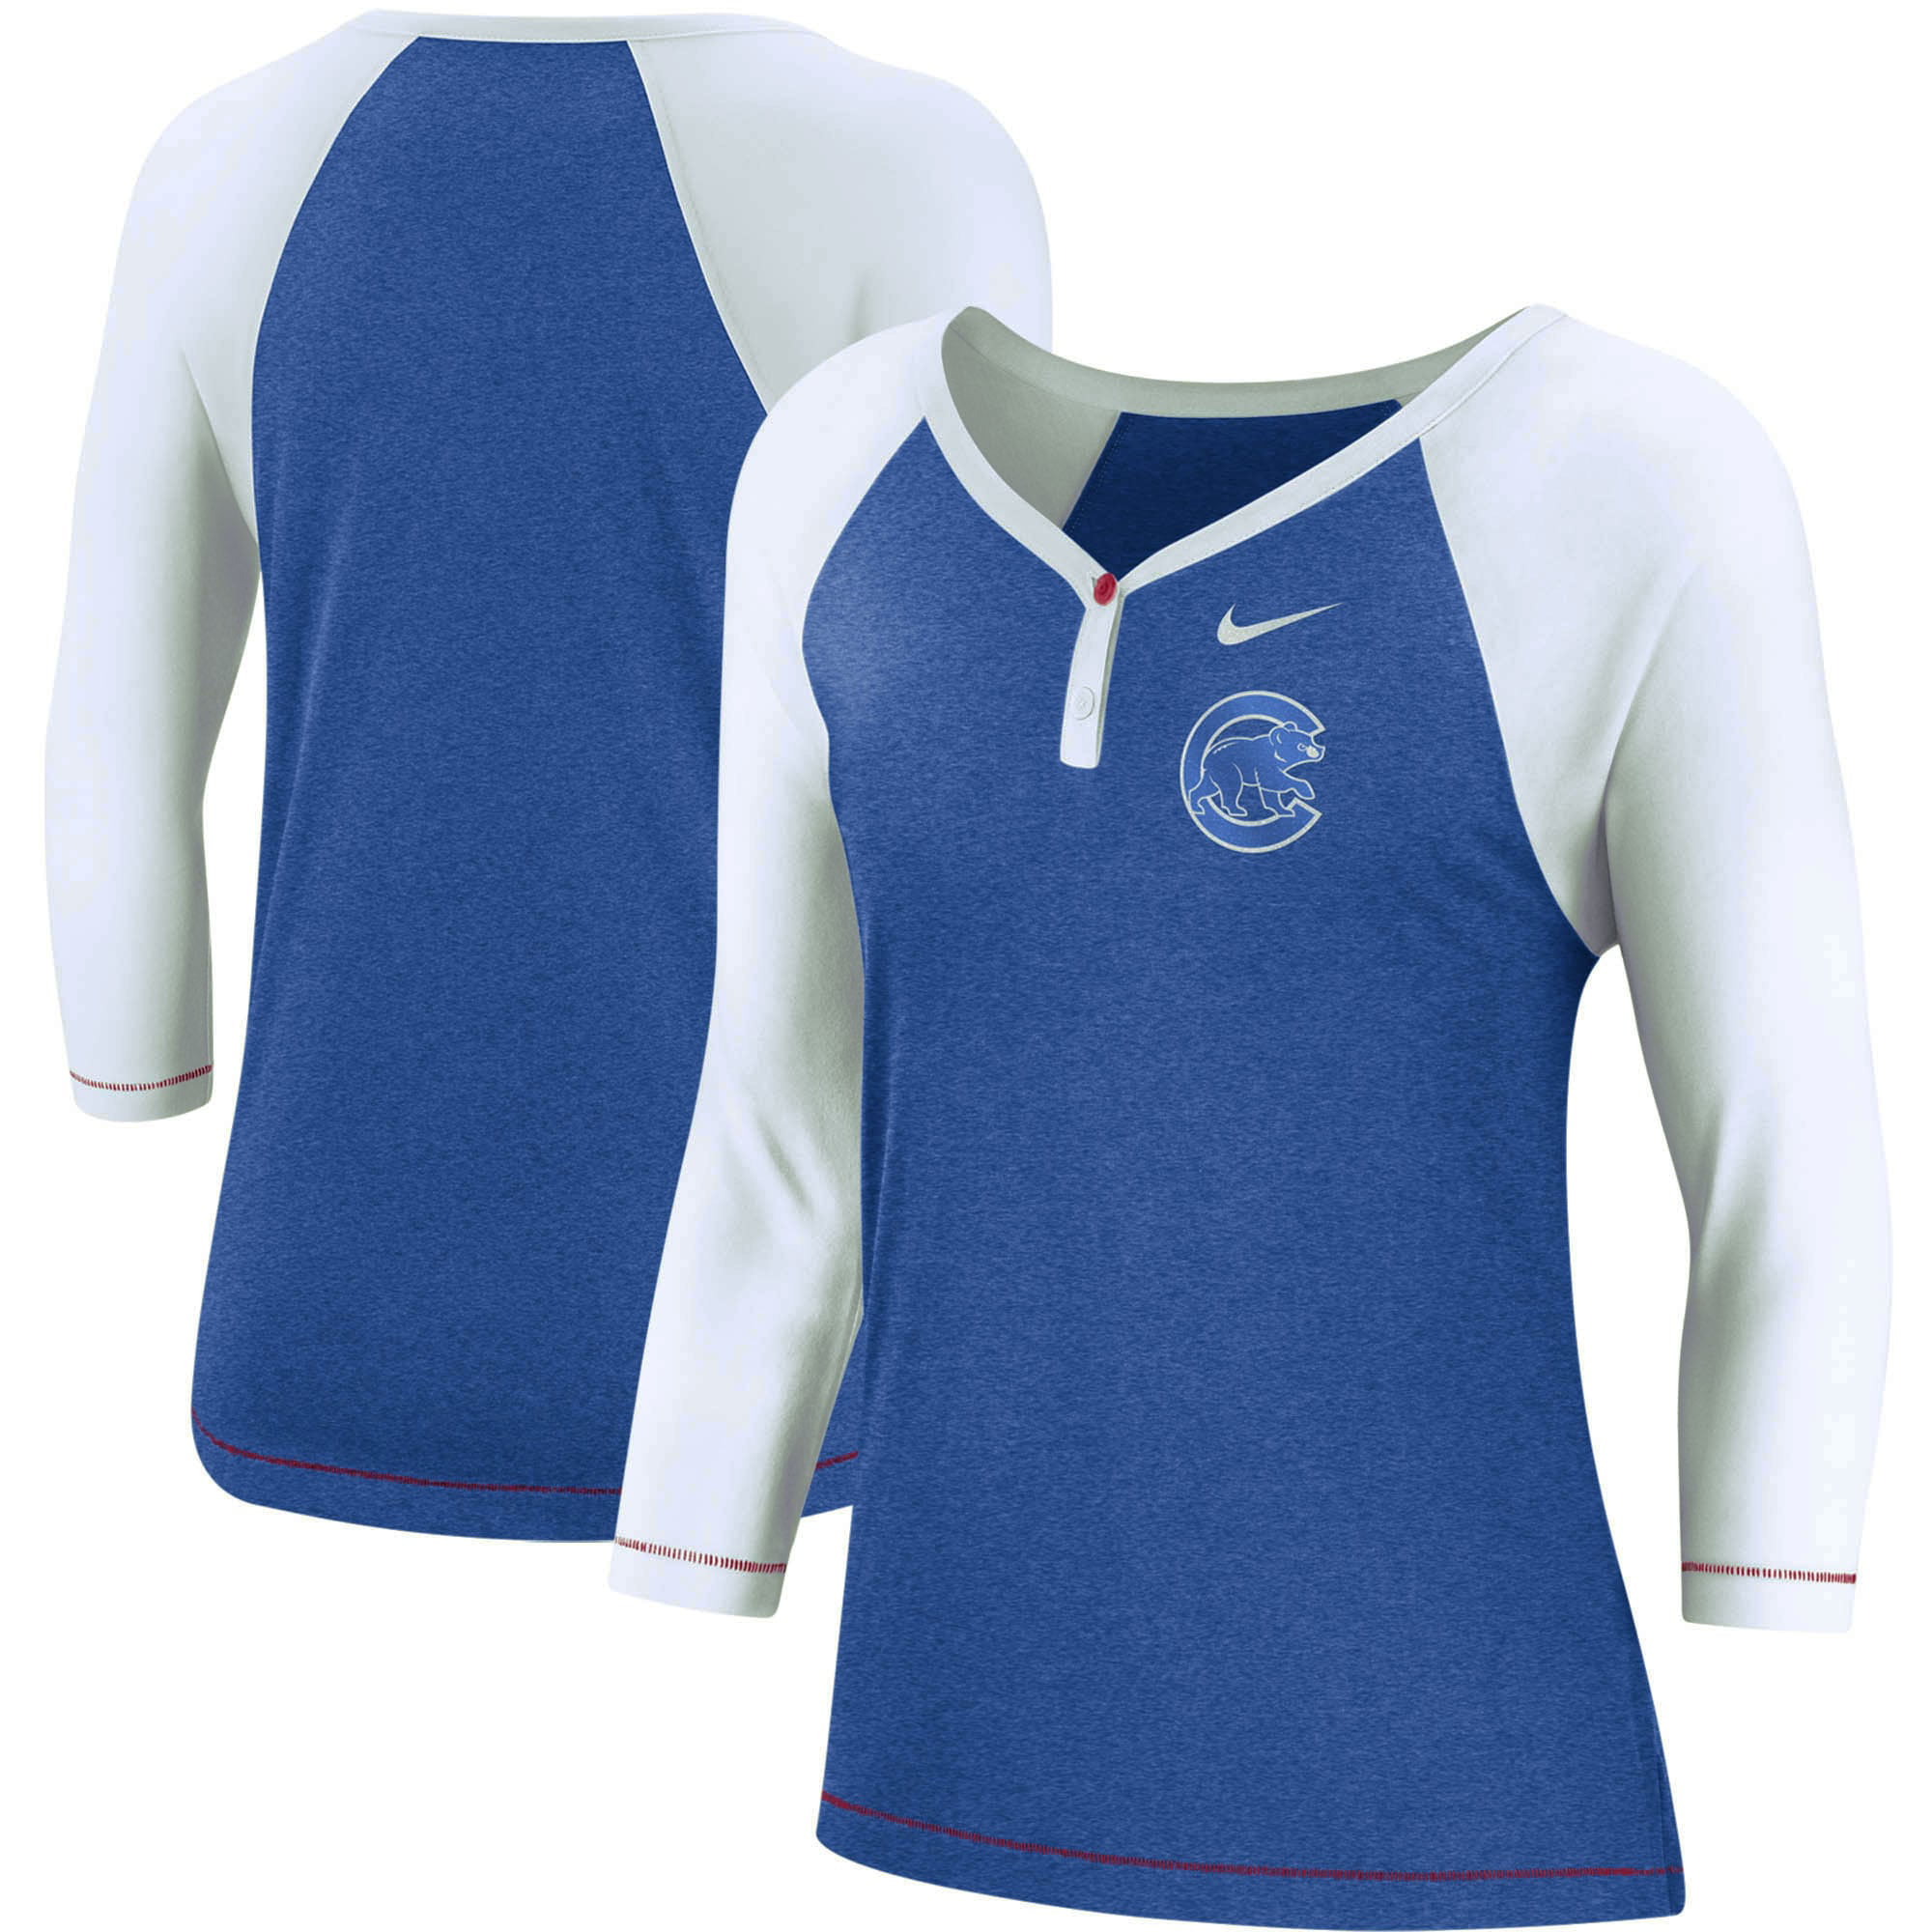 Sports Gift CoolCHICAGO CUBS Handmade Cotton Pillowcase Standard/Queen 